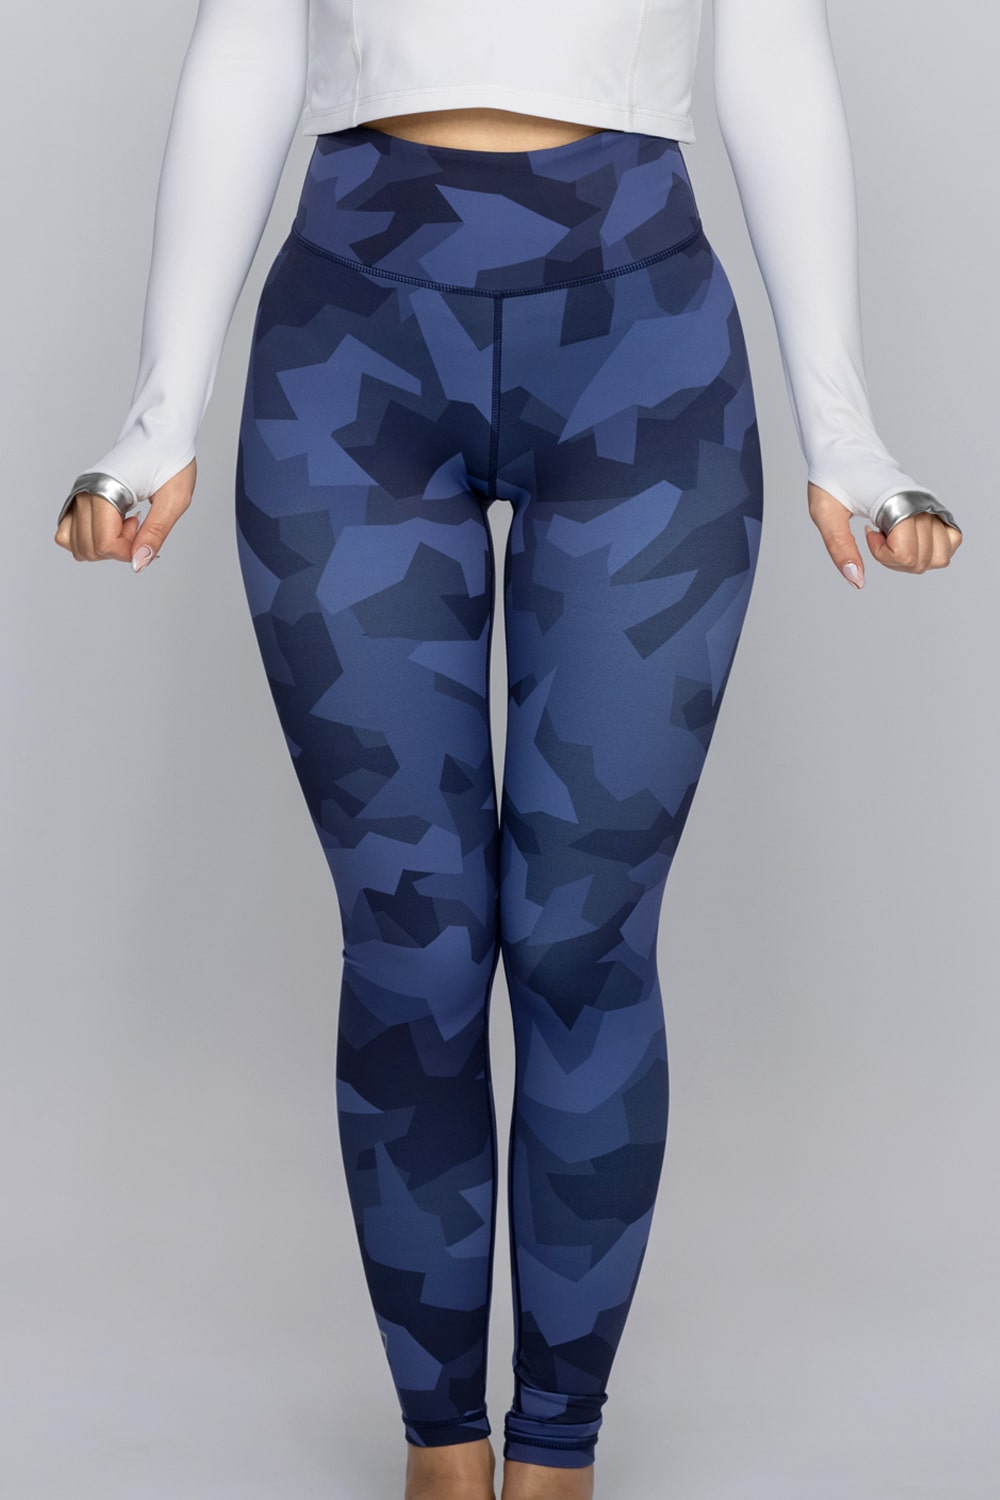 Premium navy camo leggings for Girls 